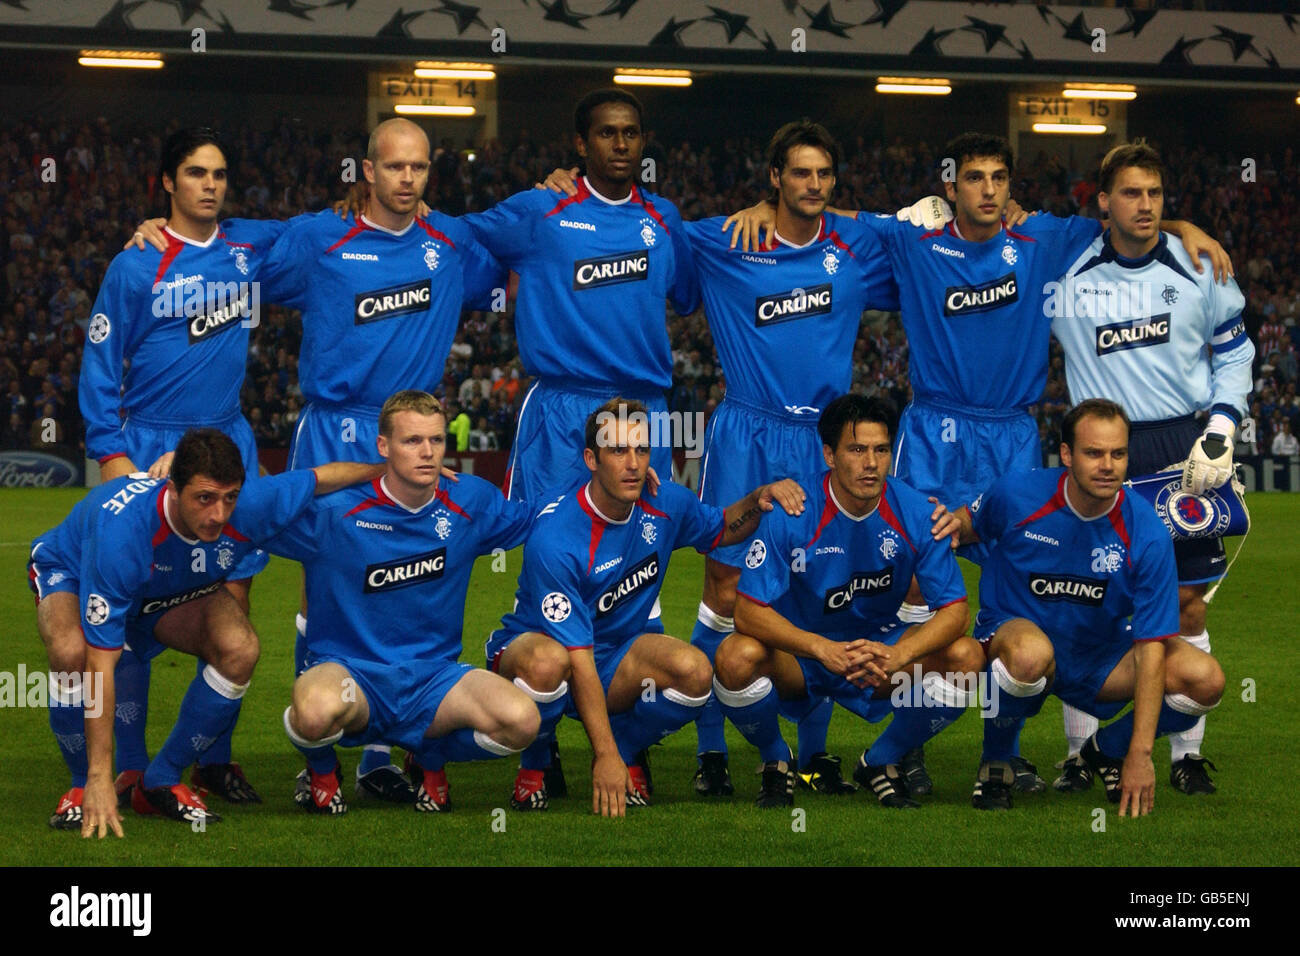 Soccer - UEFA Champions League - Group E - Rangers v VFB Stuttgart. Rangers team group Stock Photo